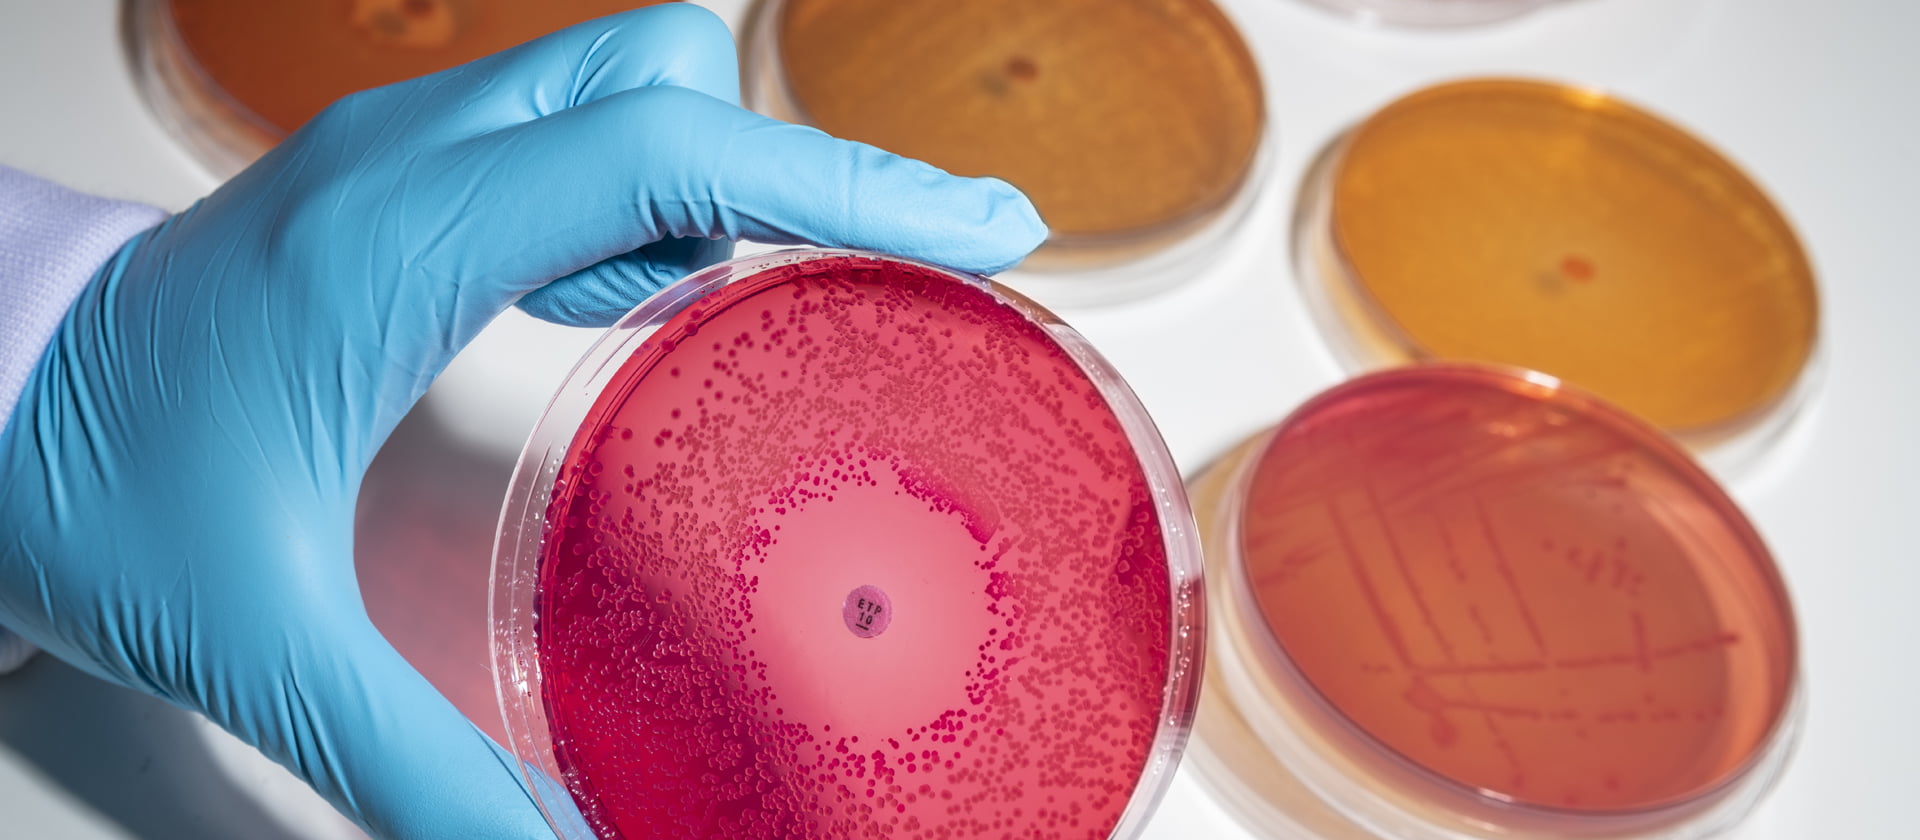 Bacteria in petri dish